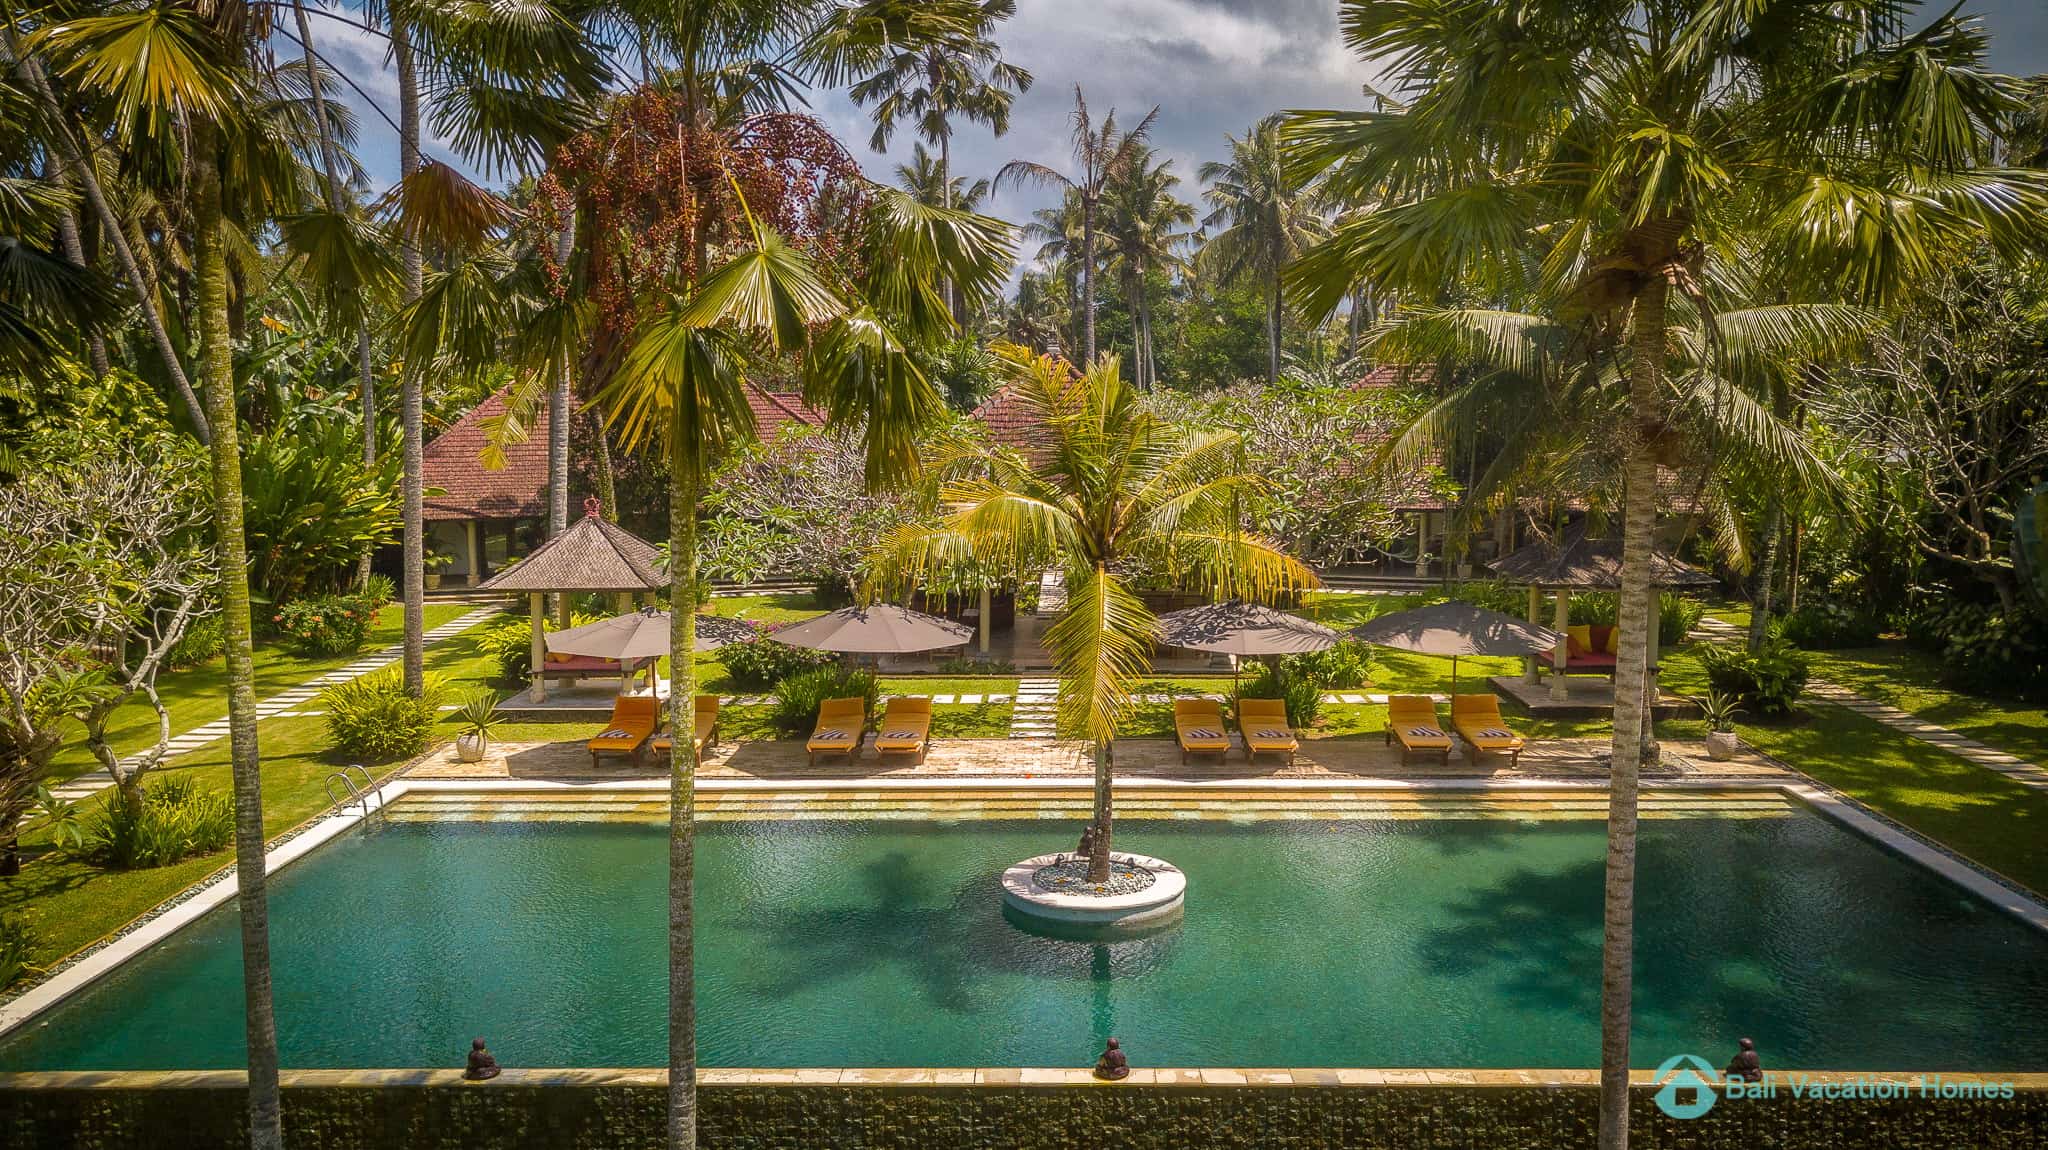 Villa-Dihati-Bali-Vacation-Homes-71